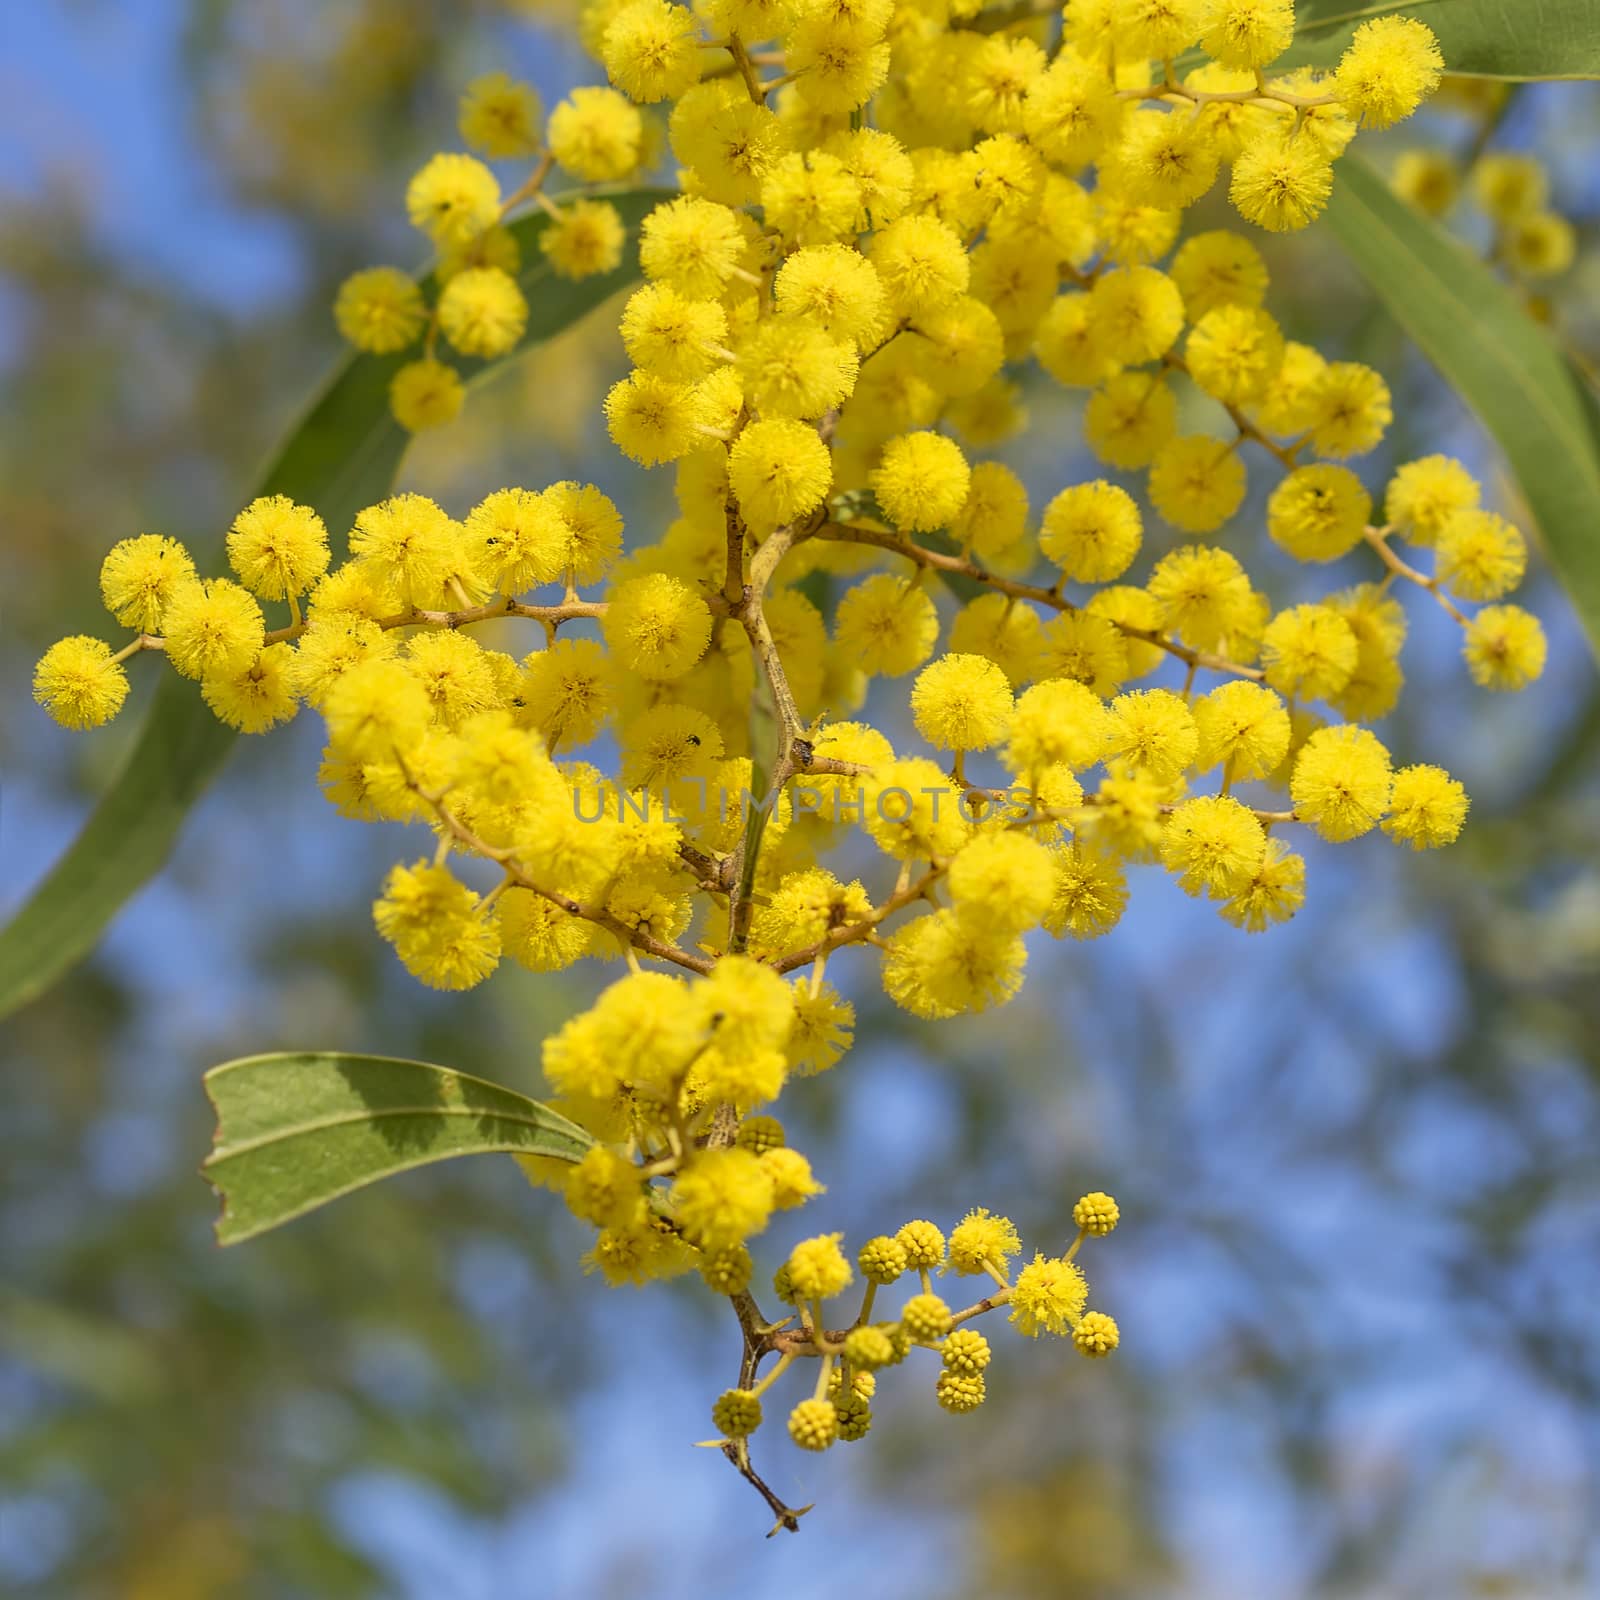 Australian Icon Golden Wattle Flowers by sherj